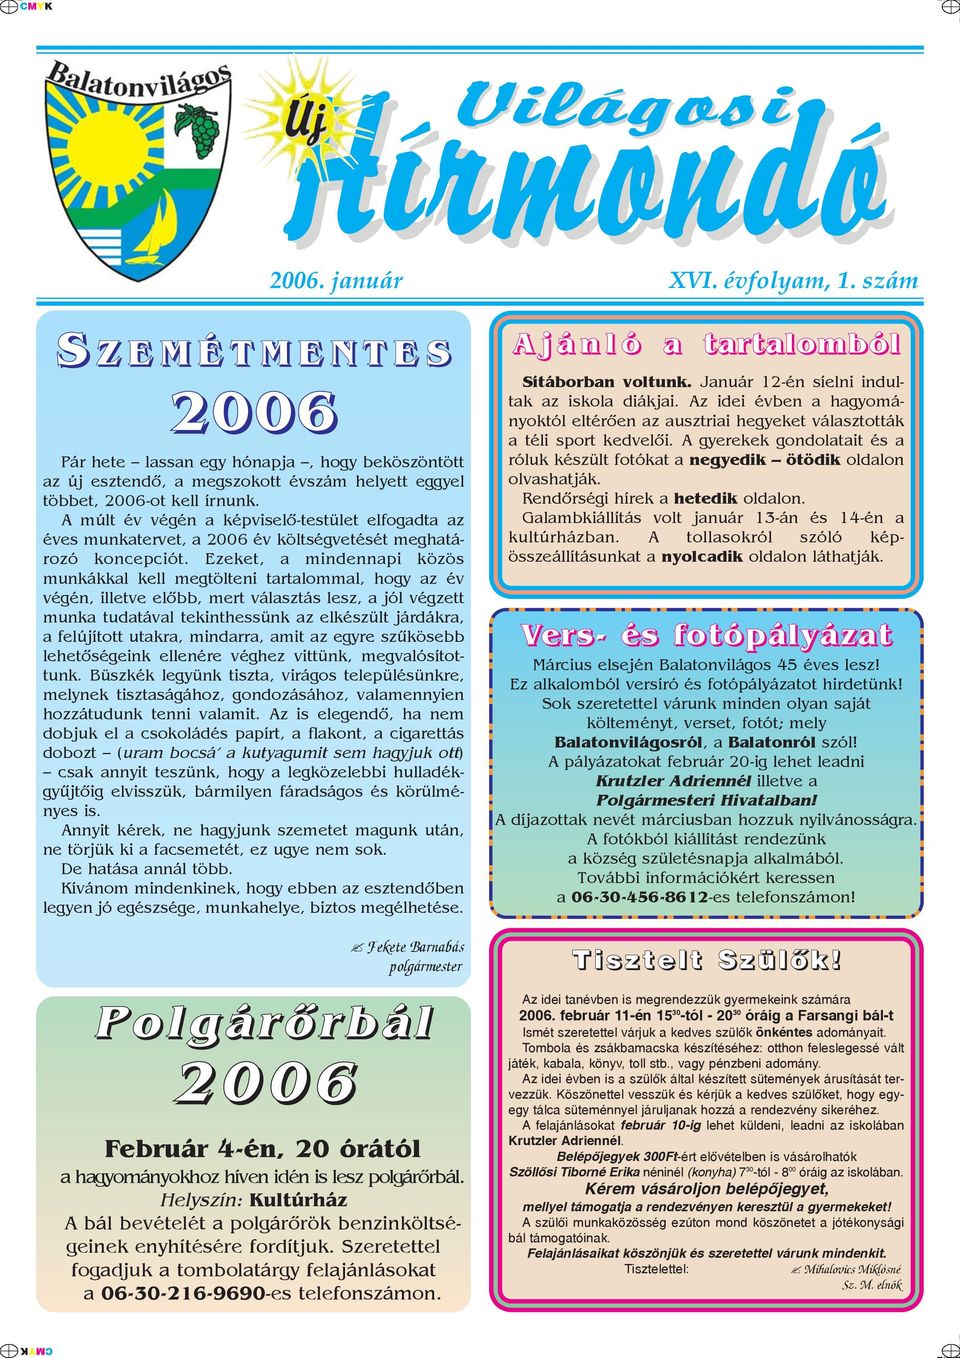 A múlt év végén a képviselõ-testület elfogadta az éves munkatervet, a 2006 év költségvetését meghatározó koncepciót.